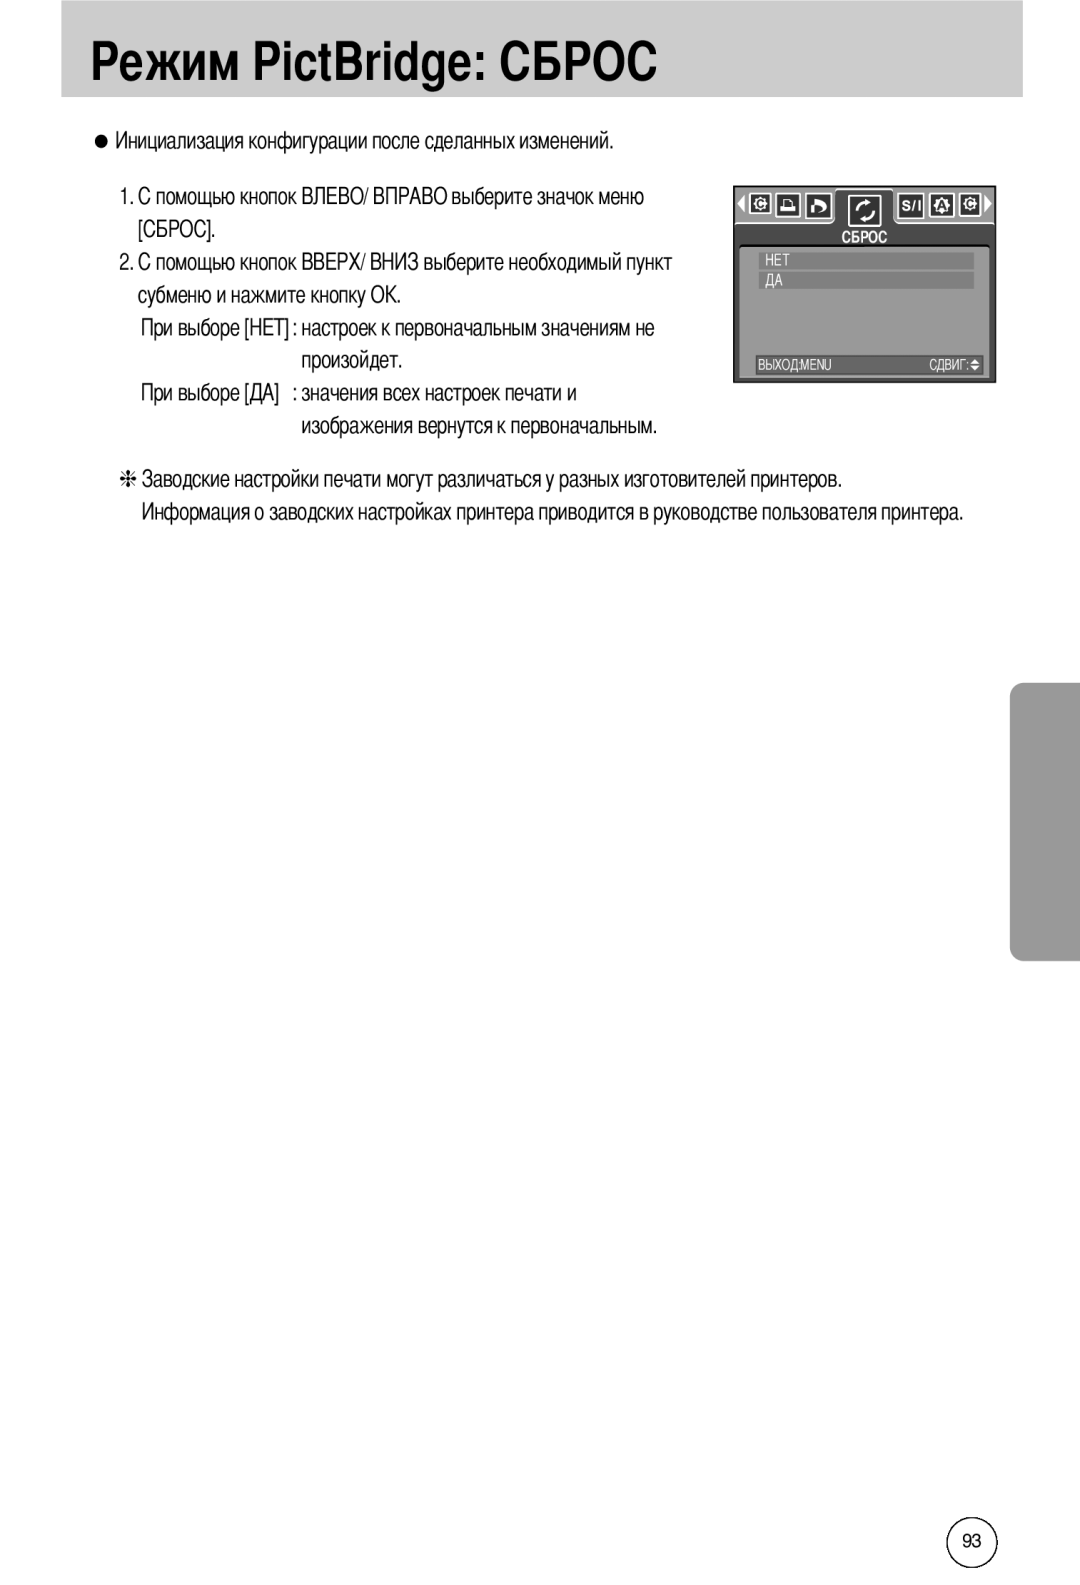 Samsung EC-I50ZZBBA/GB manual ежим PictBridge, значения всех настроек печати и изображения вернутся к первоначальным 